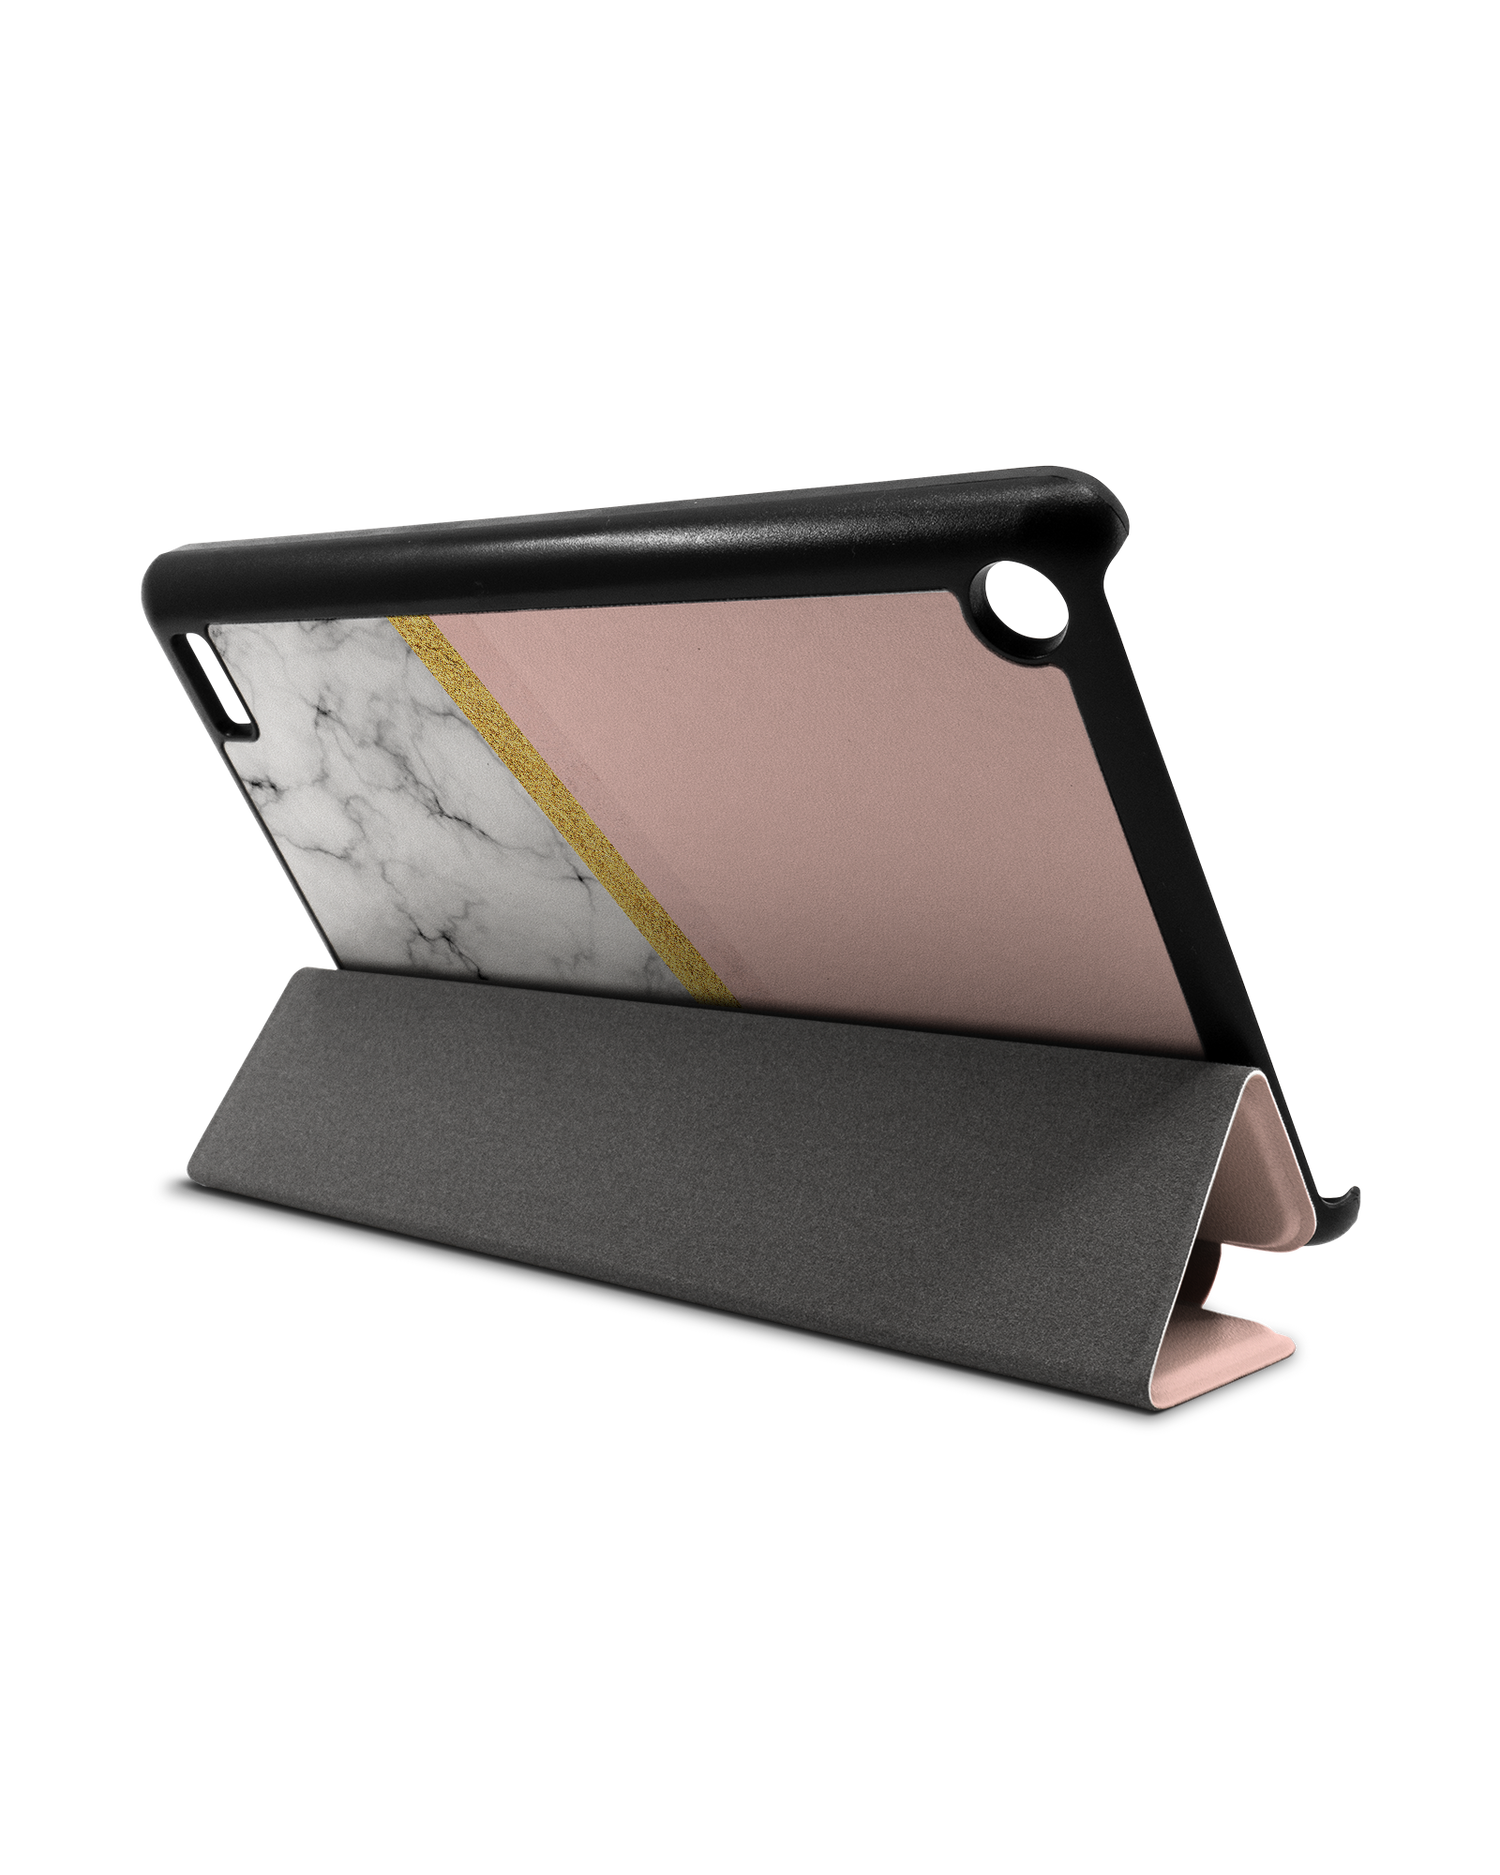 Marble Slice Tablet Smart Case für Amazon Fire 7: Aufgestellt im Querformat